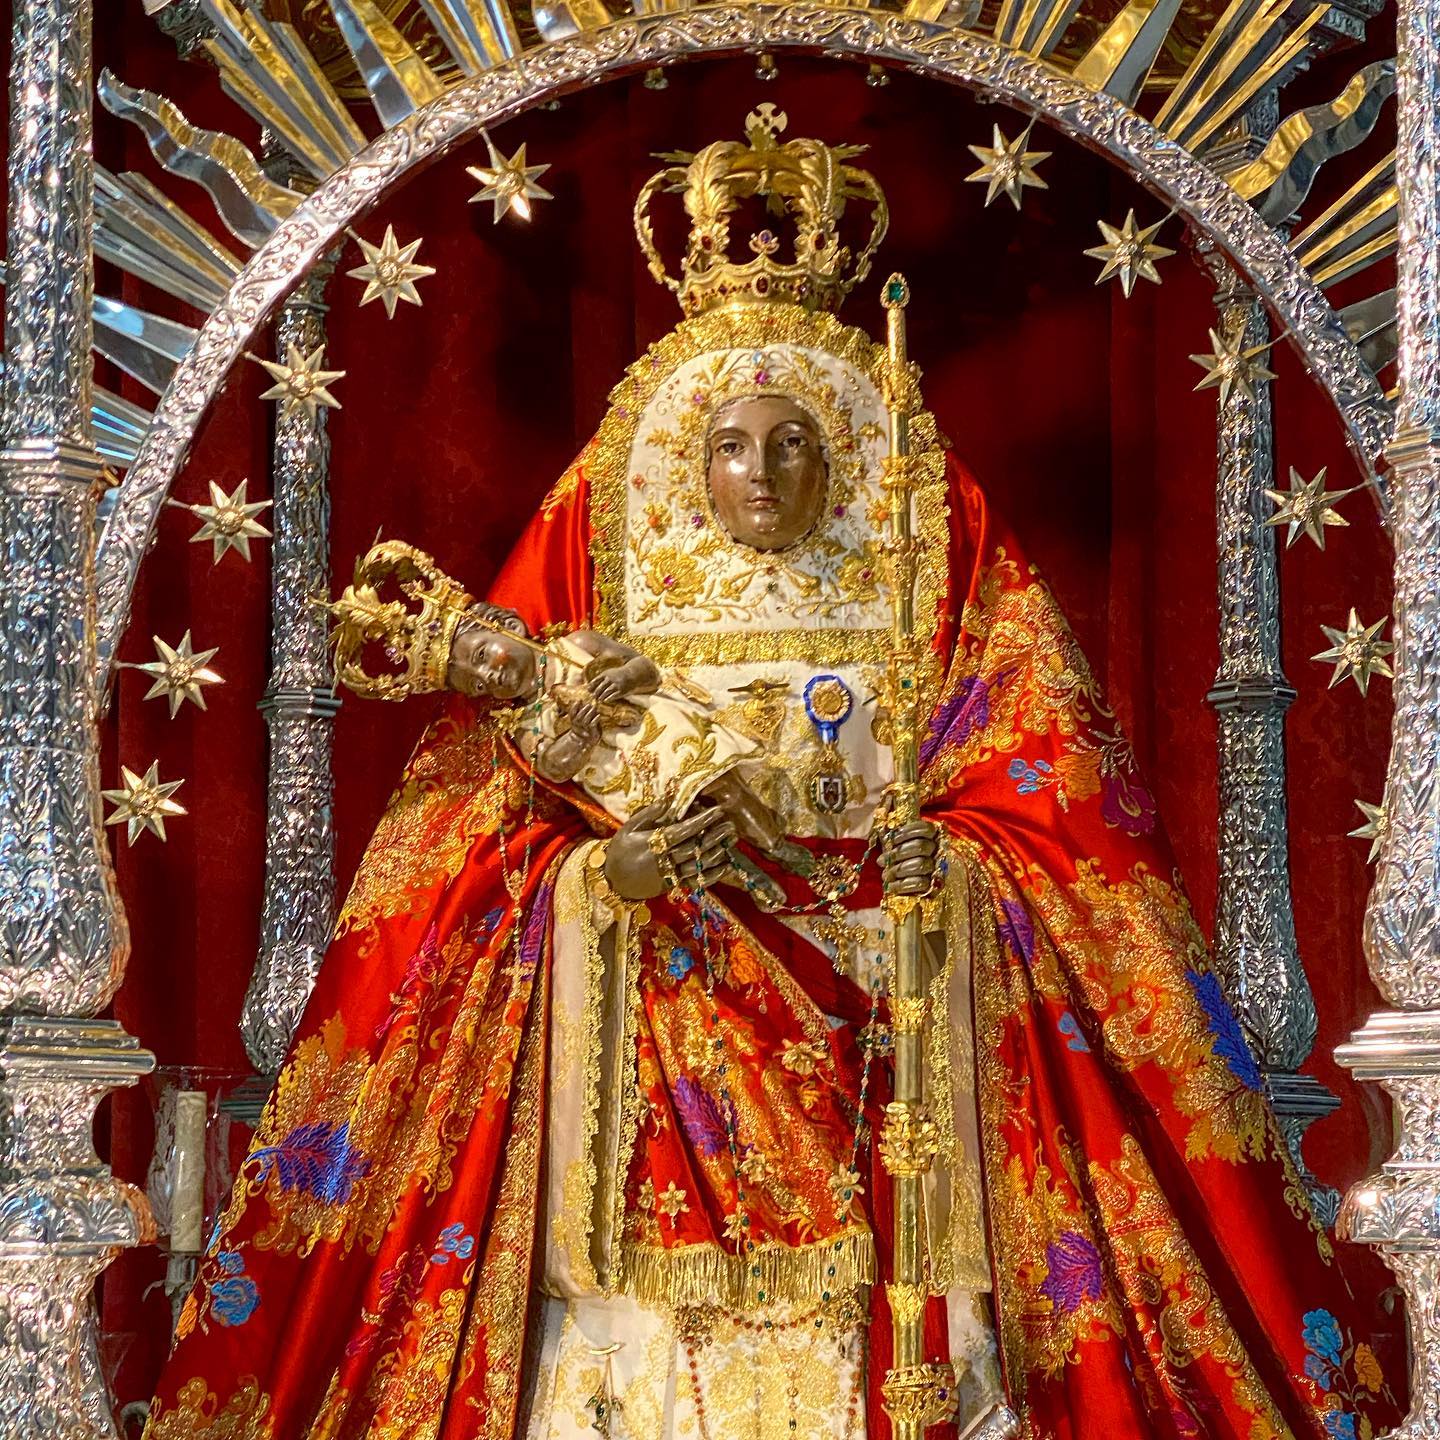 La Virgen de Candelaria ya se encuentra en su trono procesional  